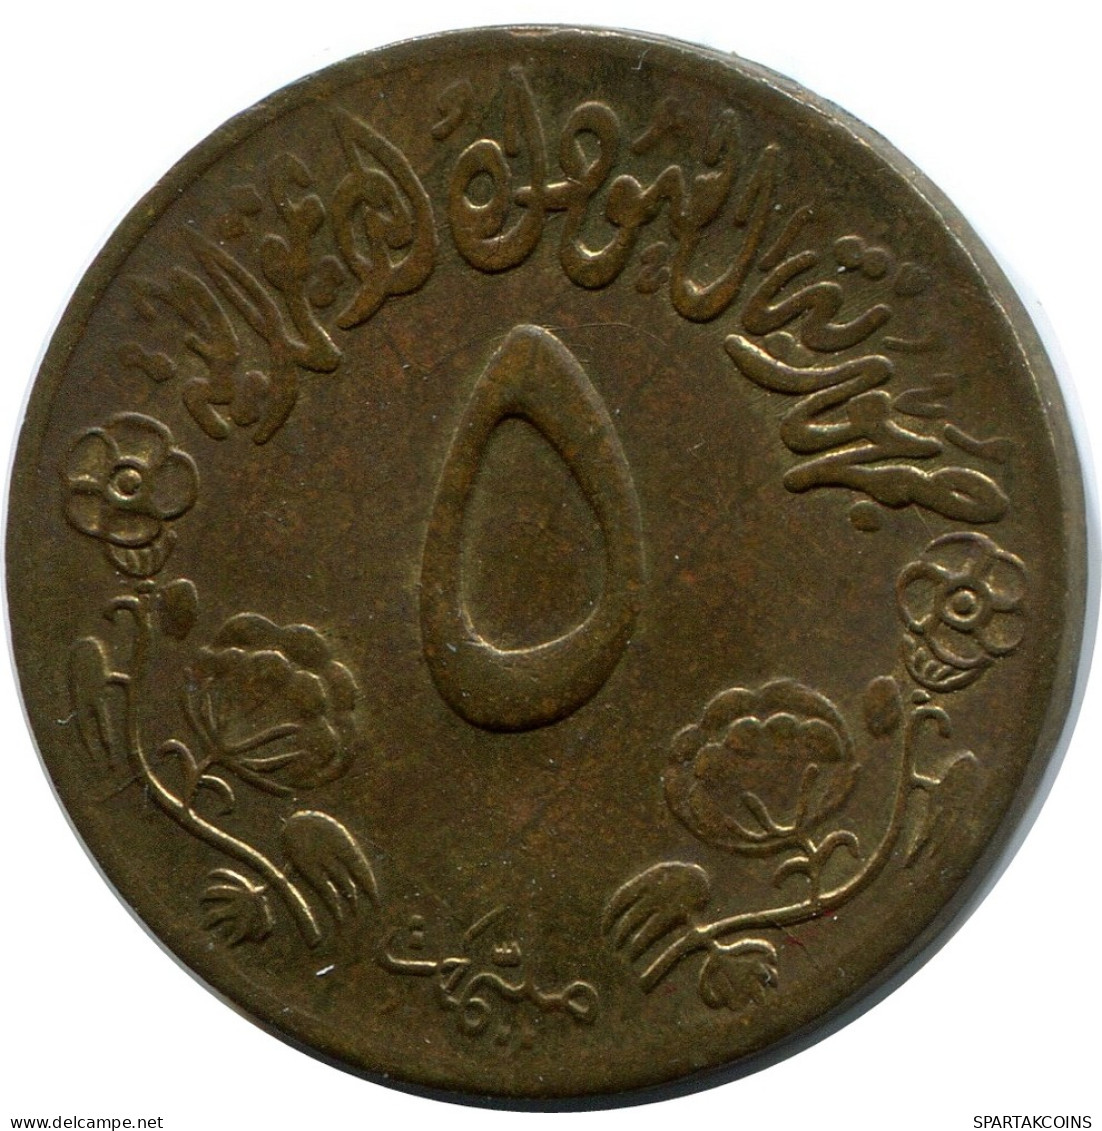 5 QIRSH 1974 SUDÁN SUDAN Moneda #AP335.E - Sudan